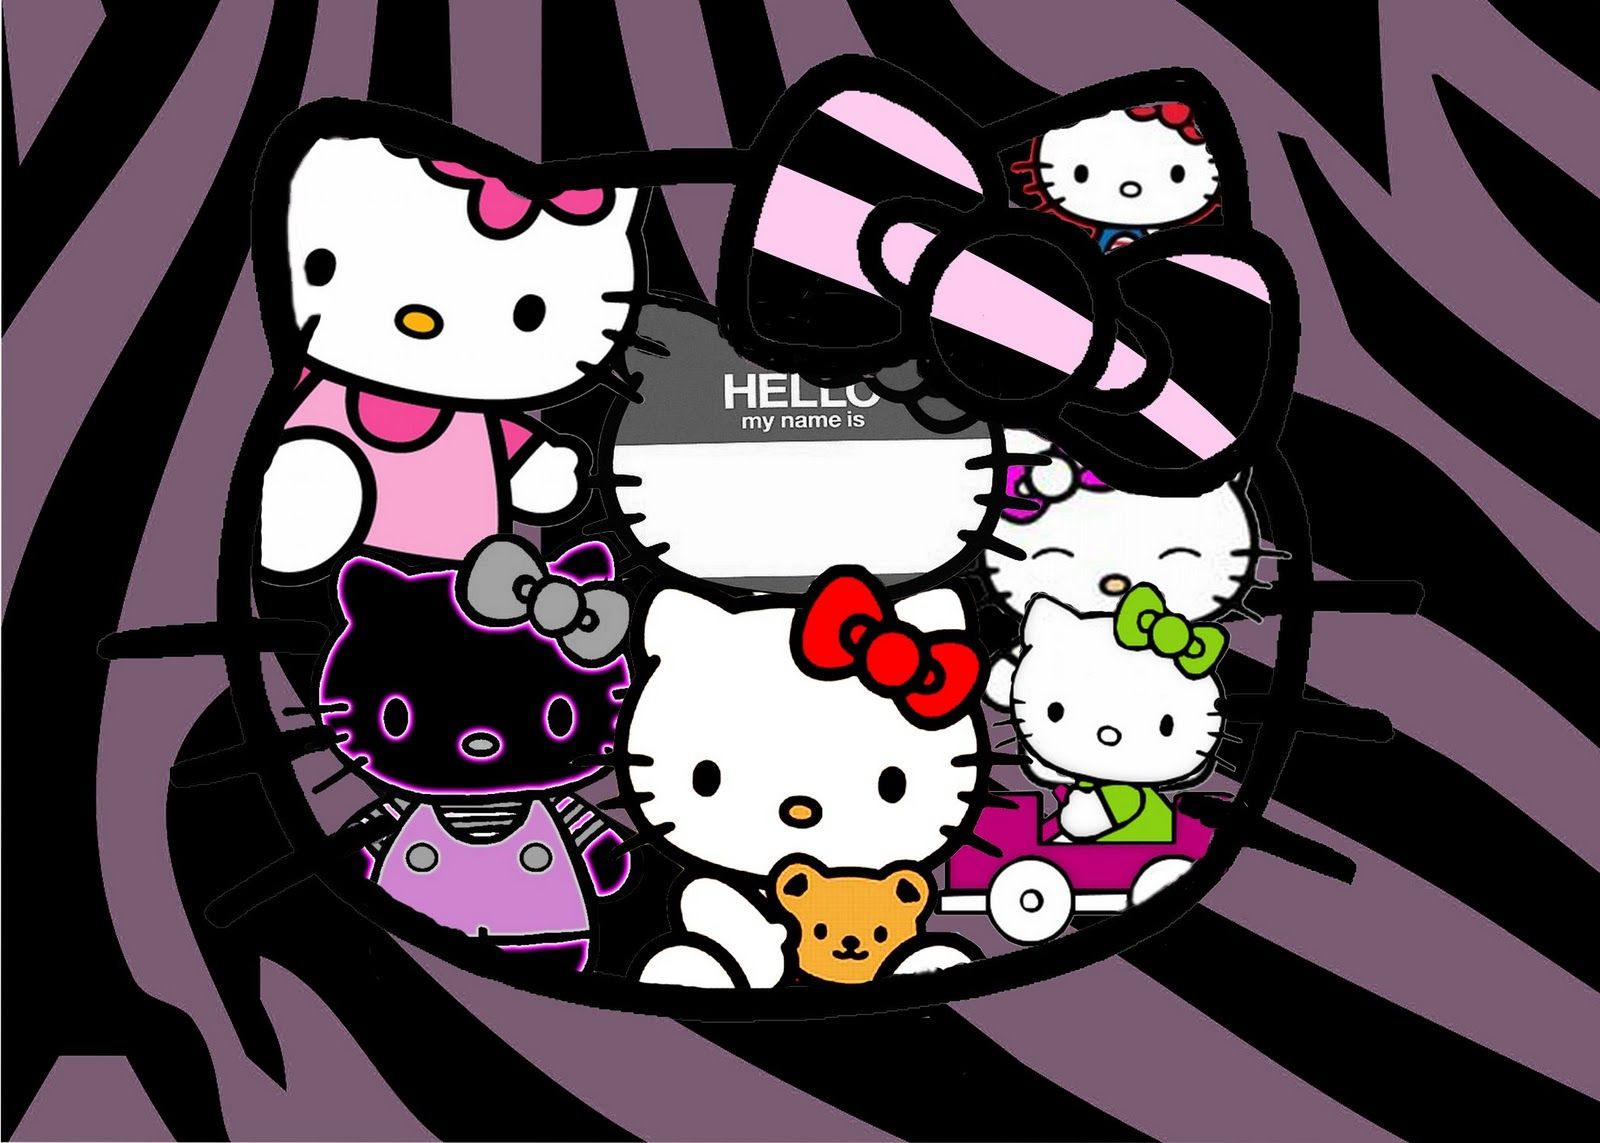 HD wallpaper hello kitty logos sanrio 1024 768 1024x768 Anime Hello Kitty  HD Art  Wallpaper Flare